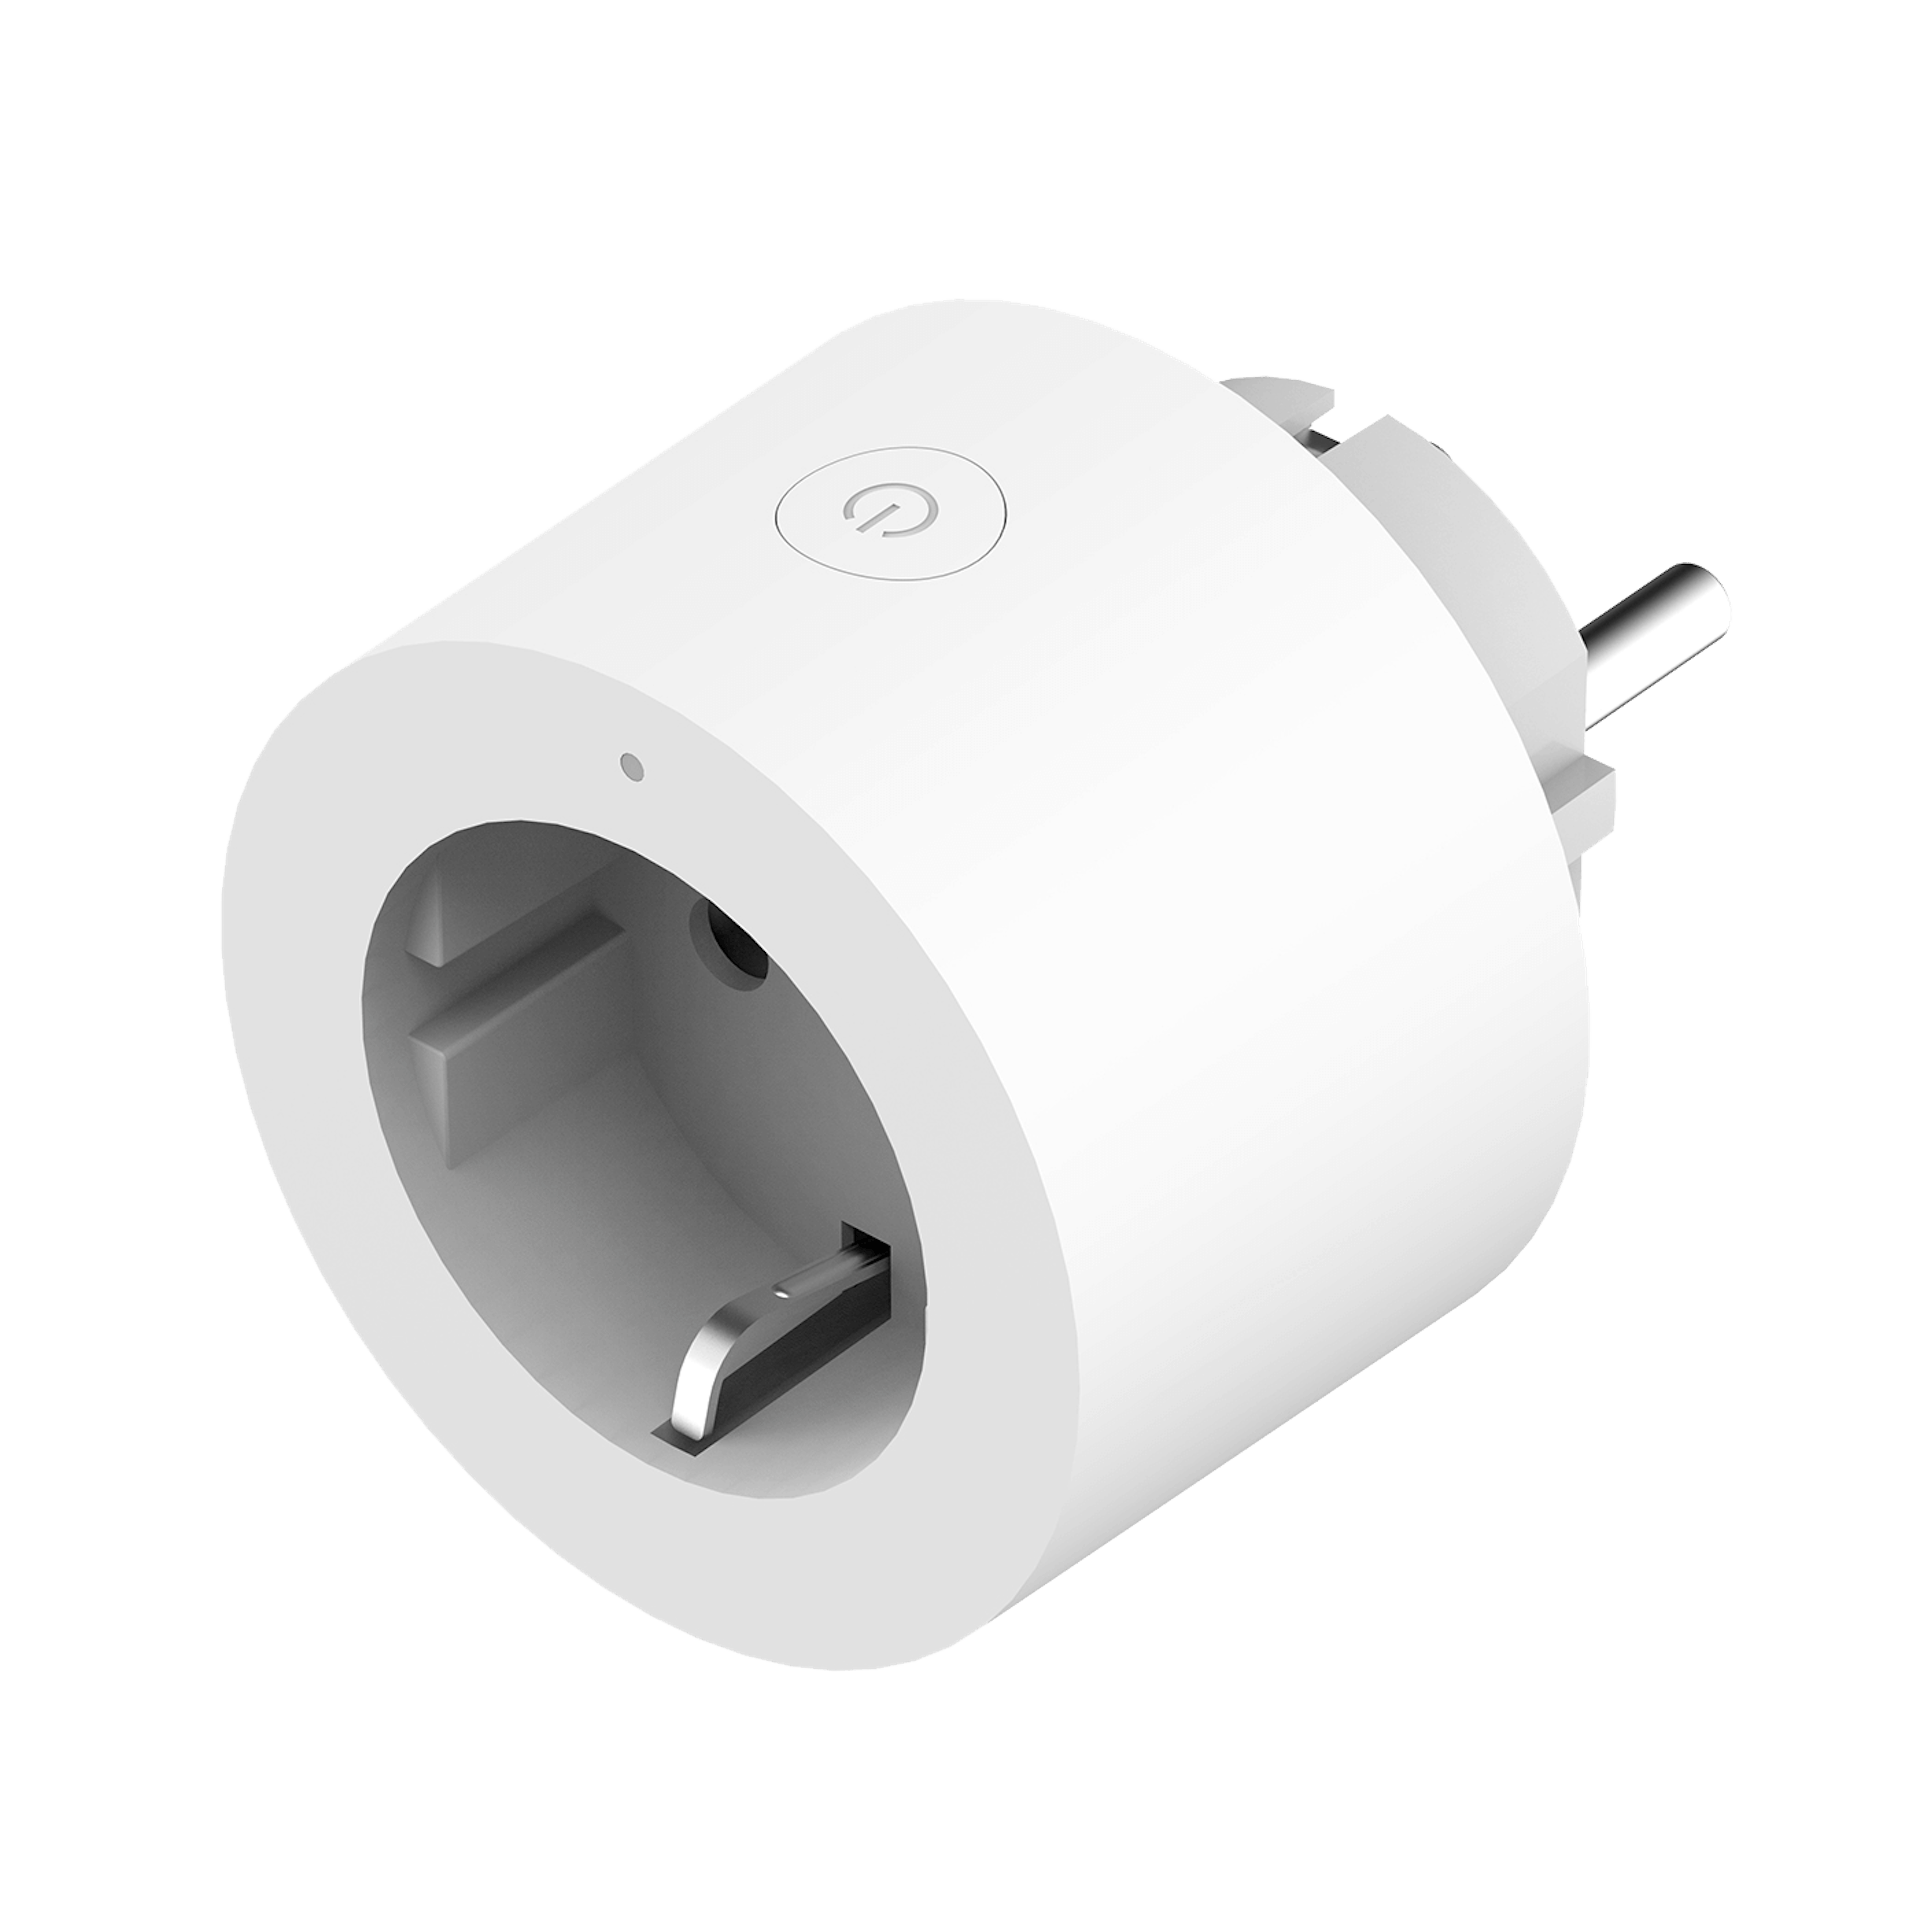 Aqara Smart Plug - Image 1